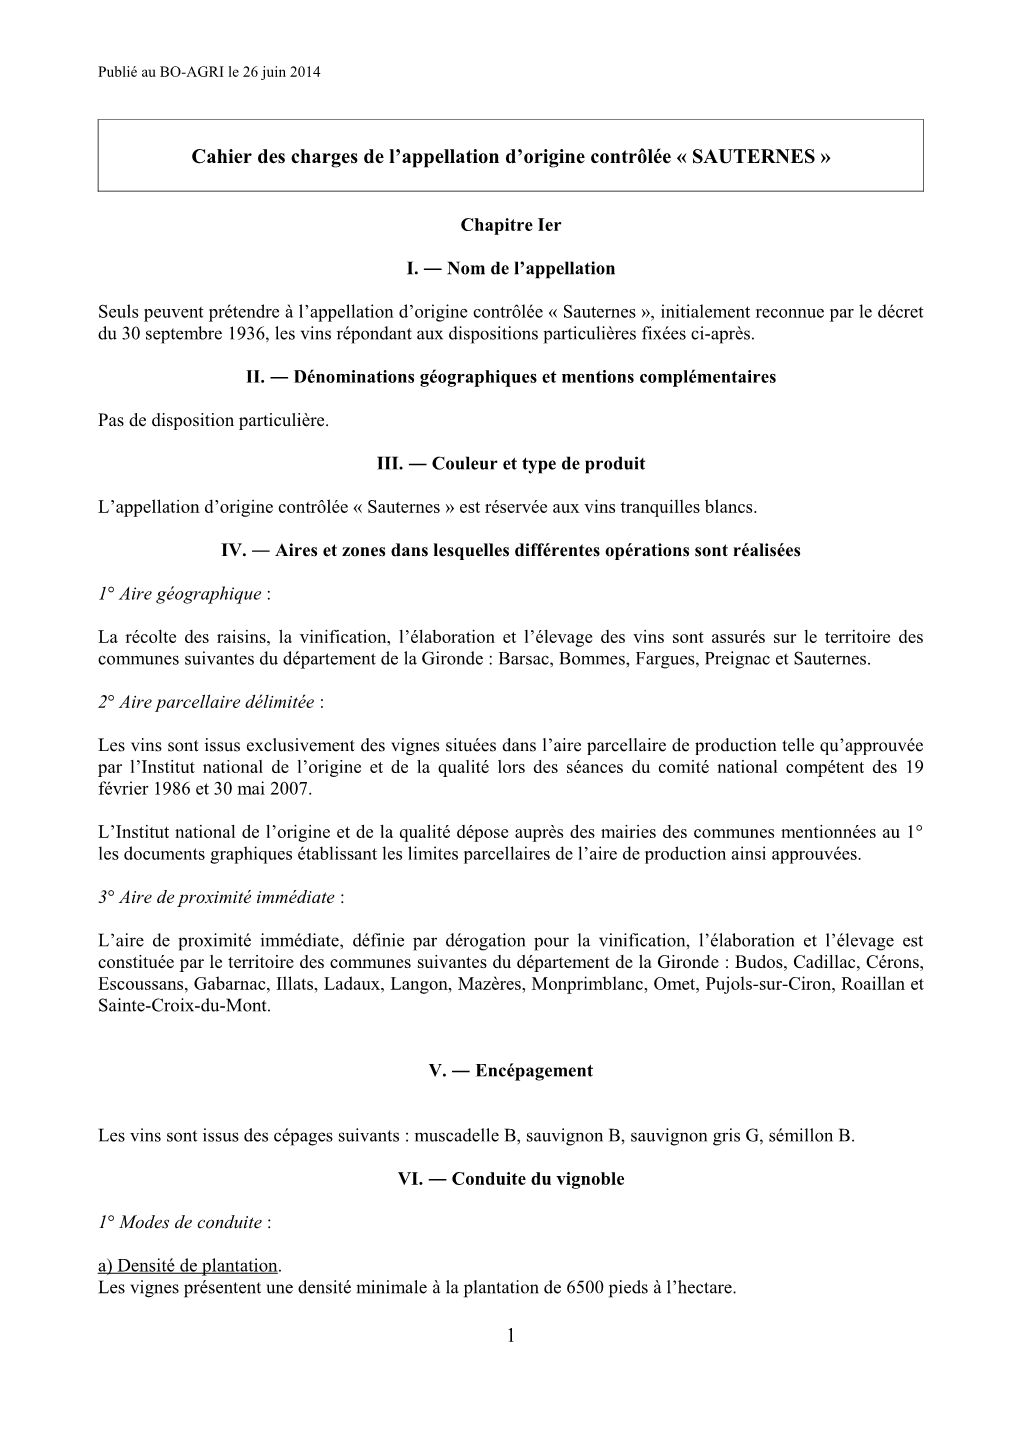 Cahier Des Charges De L'appellation D'origine Contrôlée Sauternes